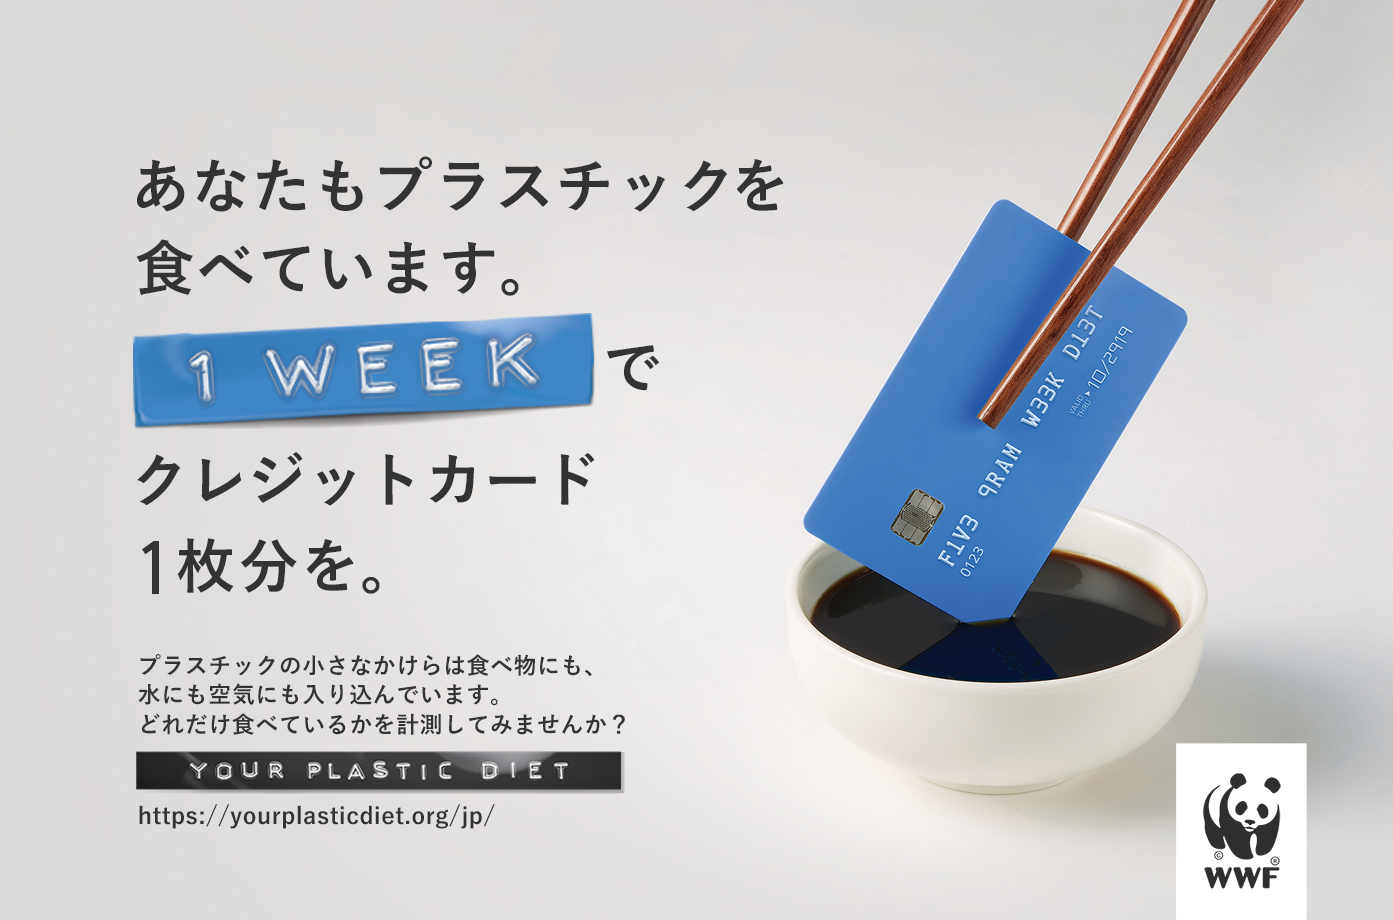 先週食べたのはクレジットカード 今週も食べるとペン 動画 Your Plastic Dietを公表 Wwfジャパンのプレスリリース